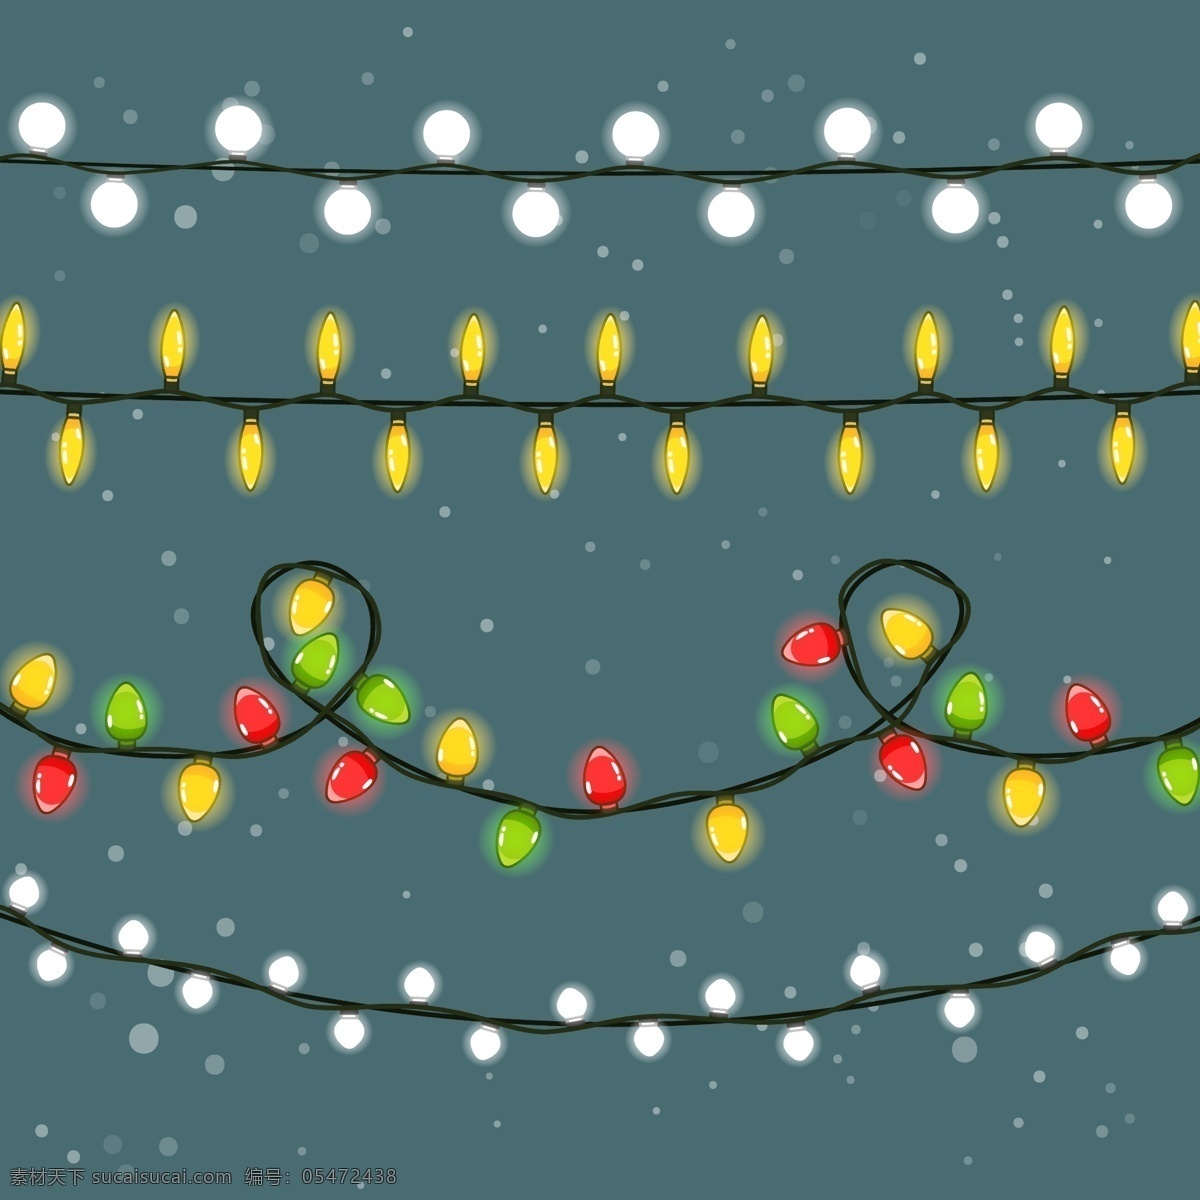 彩灯 灯串 节日素材 圣诞 圣诞灯串素材 圣诞节 圣诞素材 圣诞元素